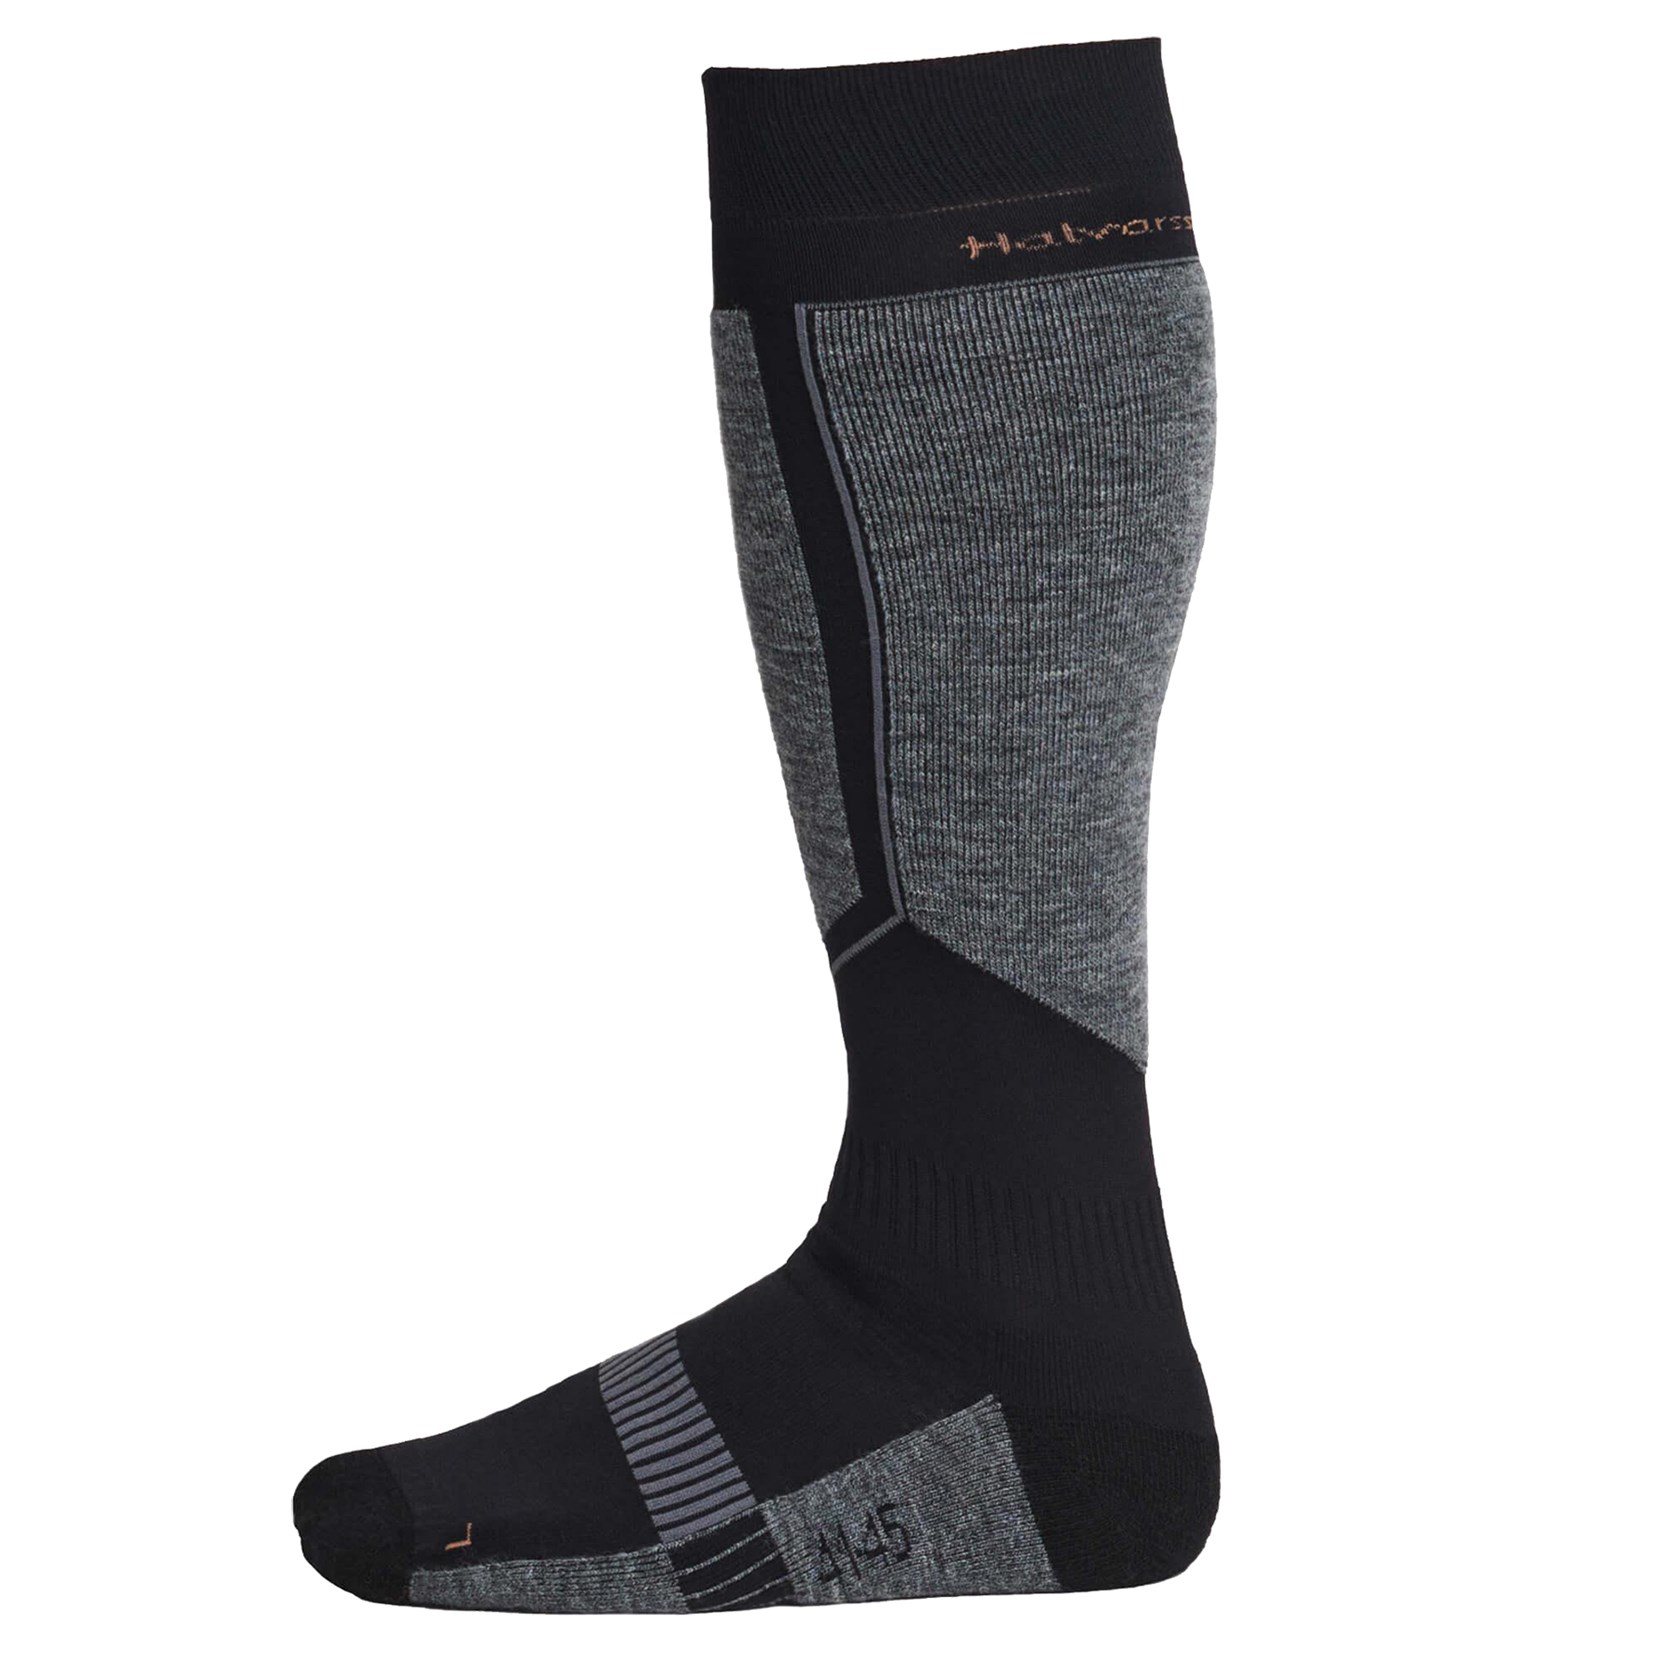 Halvarssons Cool socks in black brown 